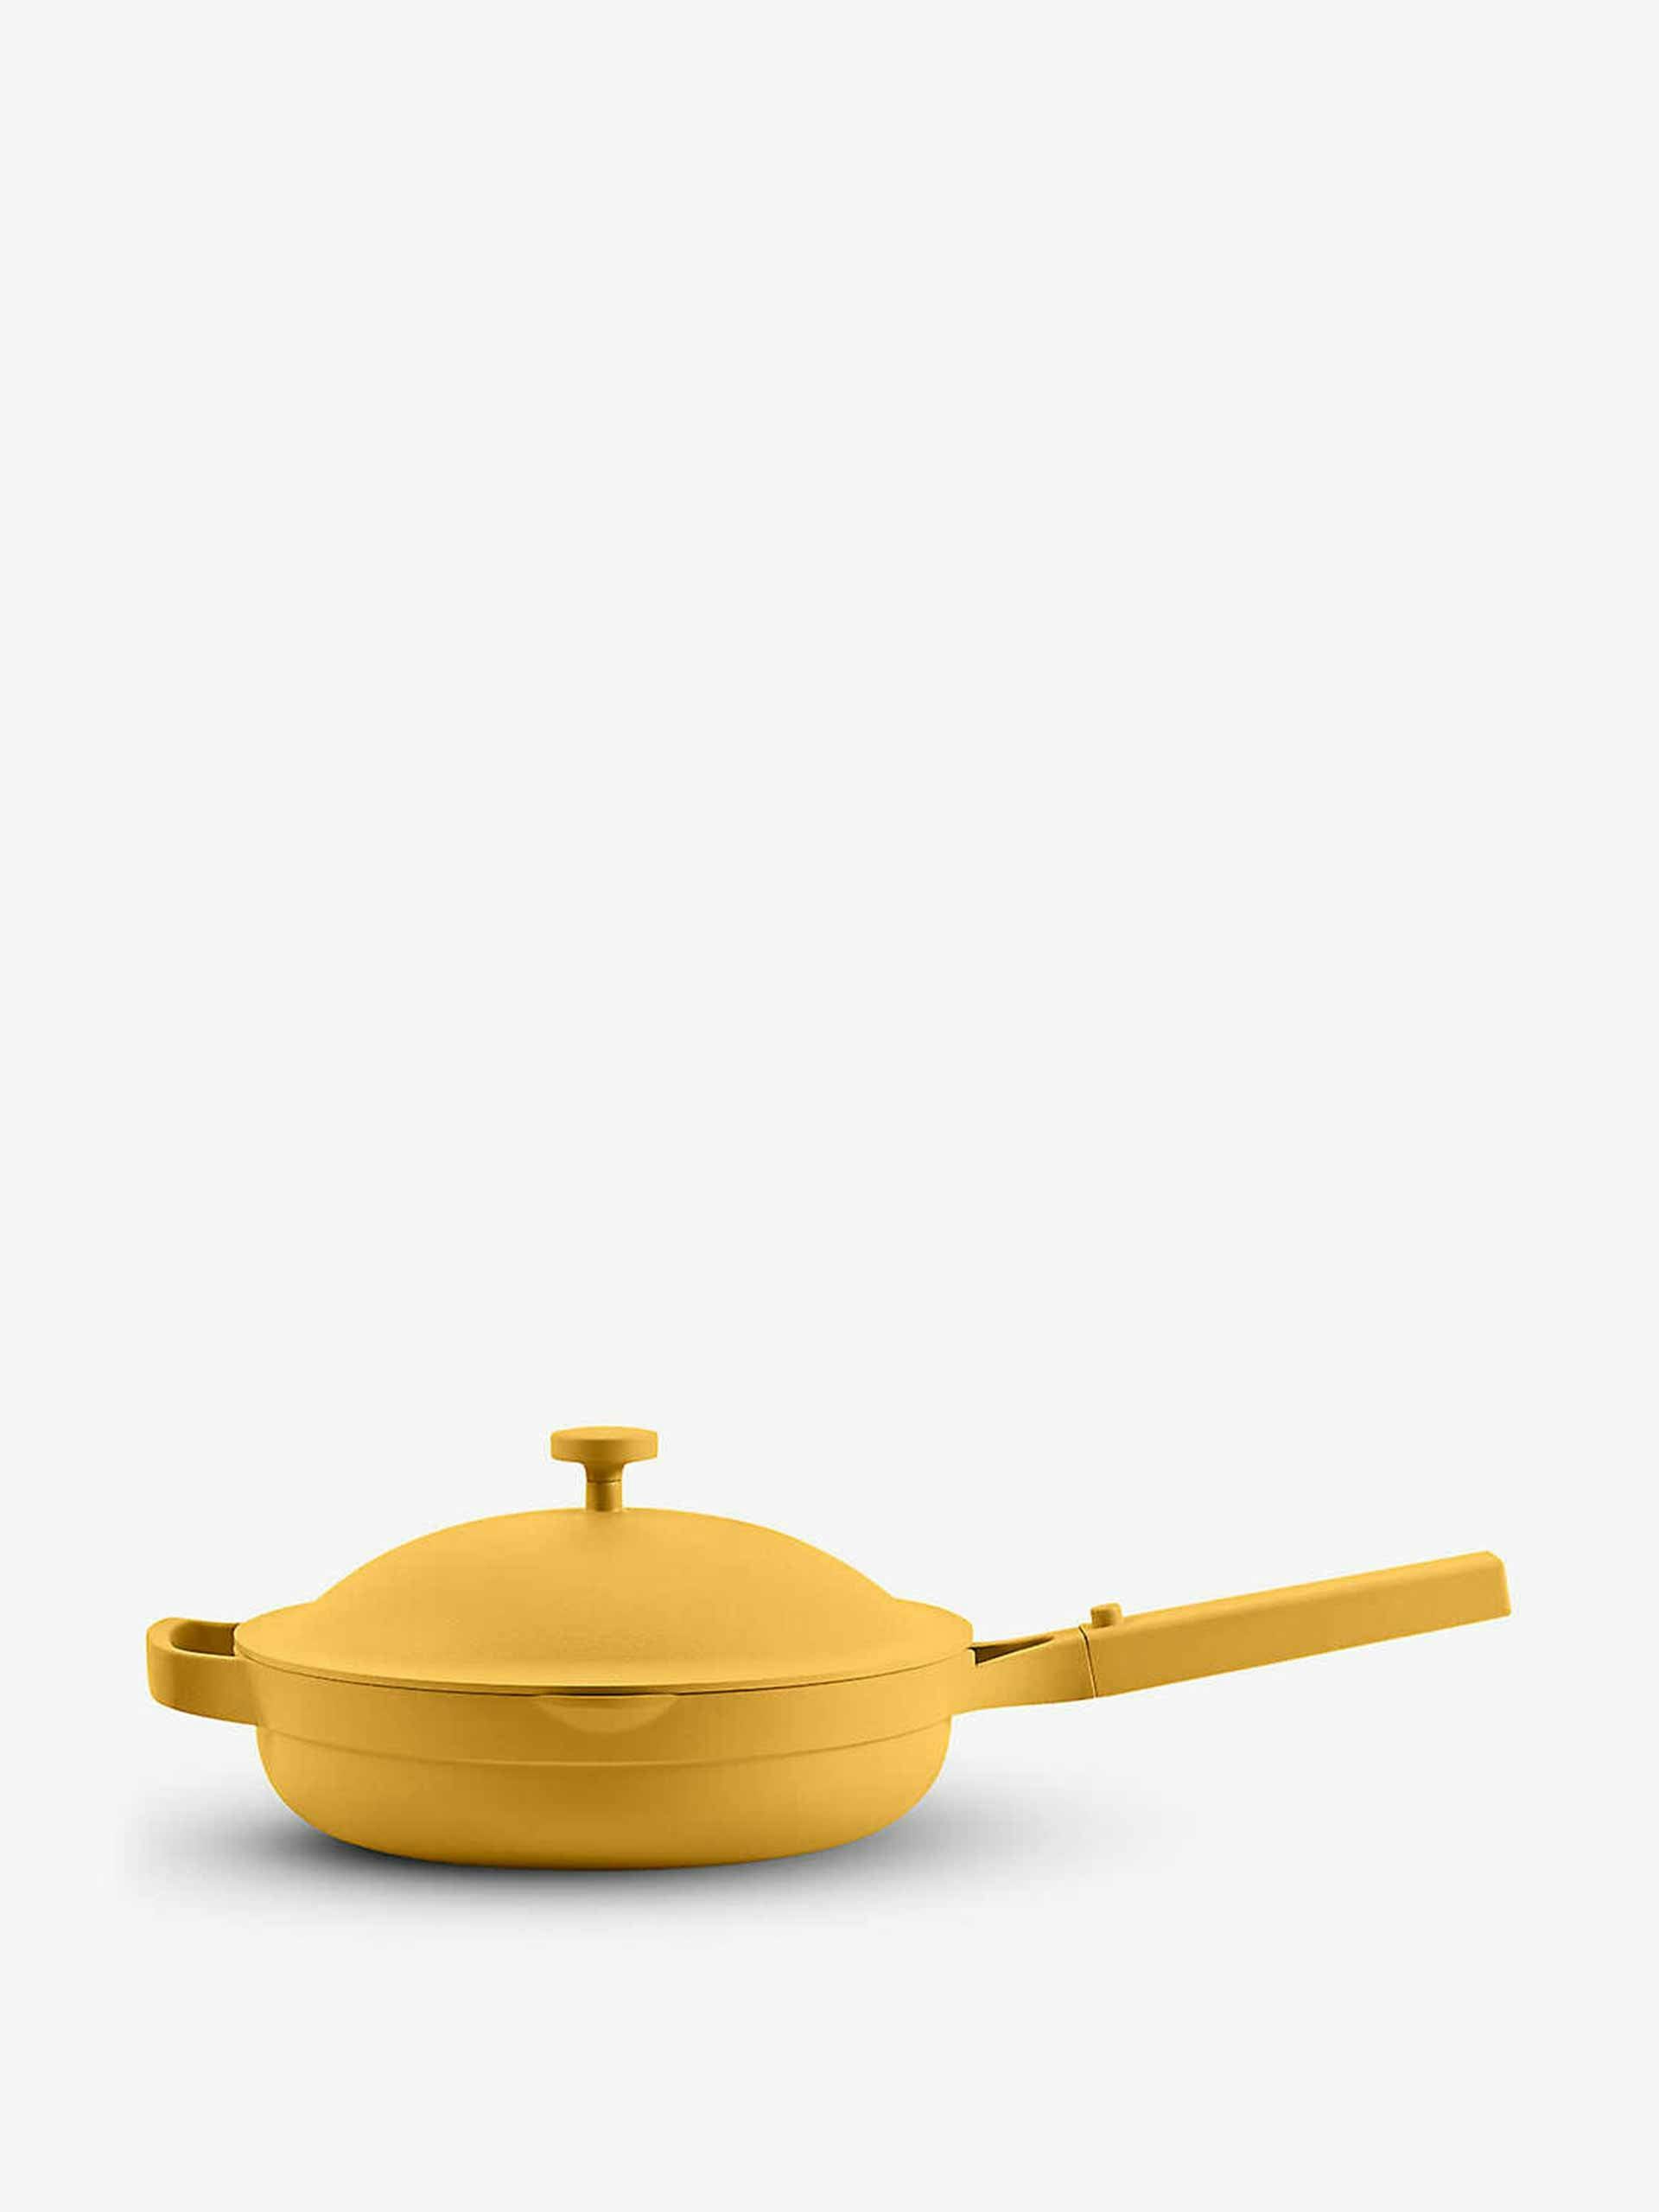 Yellow cooking pan